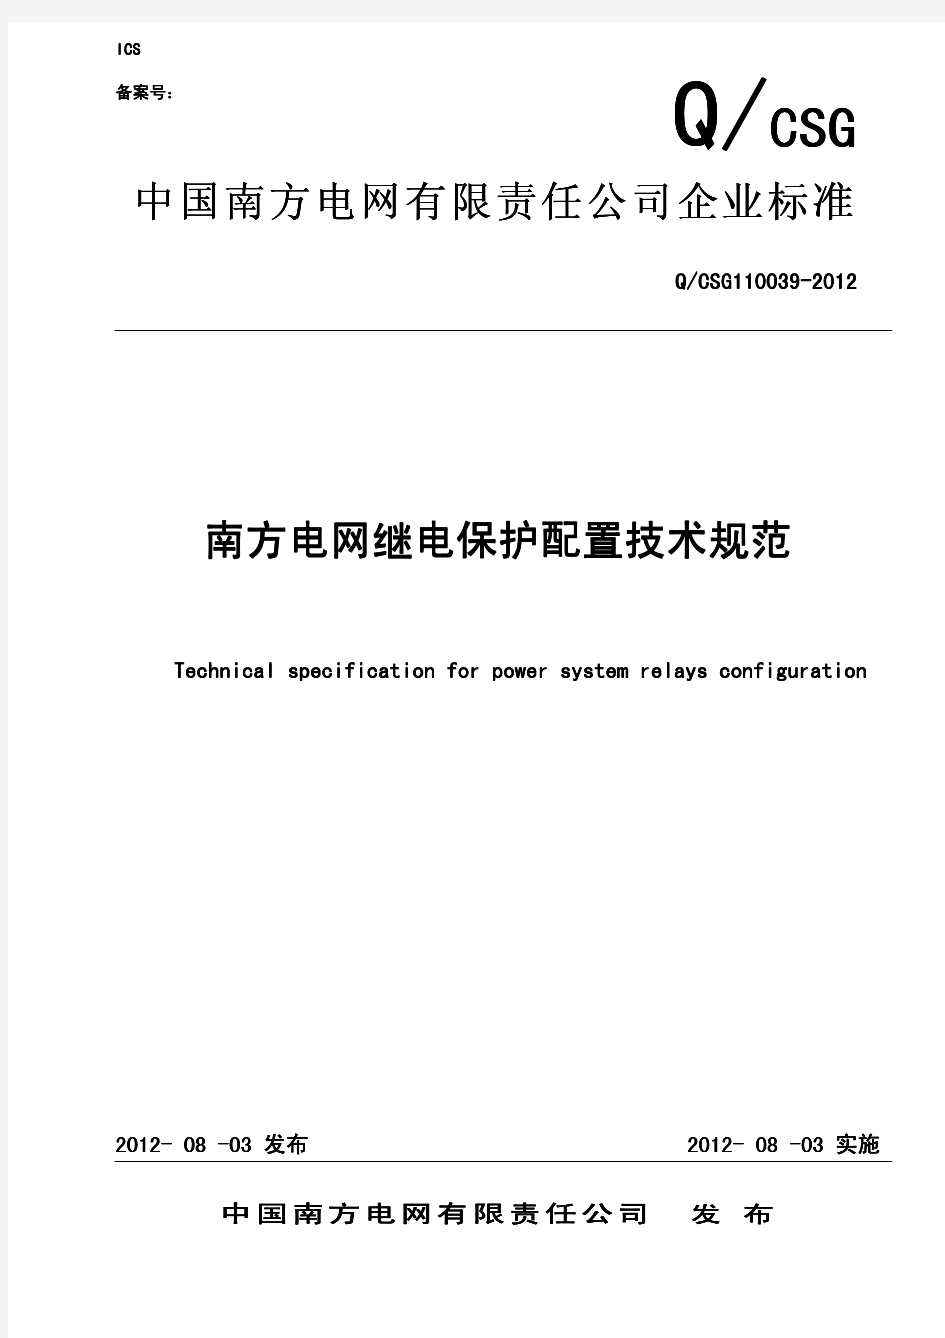 中国南方电网有限责任公司企业标准-南方电网继电保护配置技术规范-QCSG110039-2012(作废)